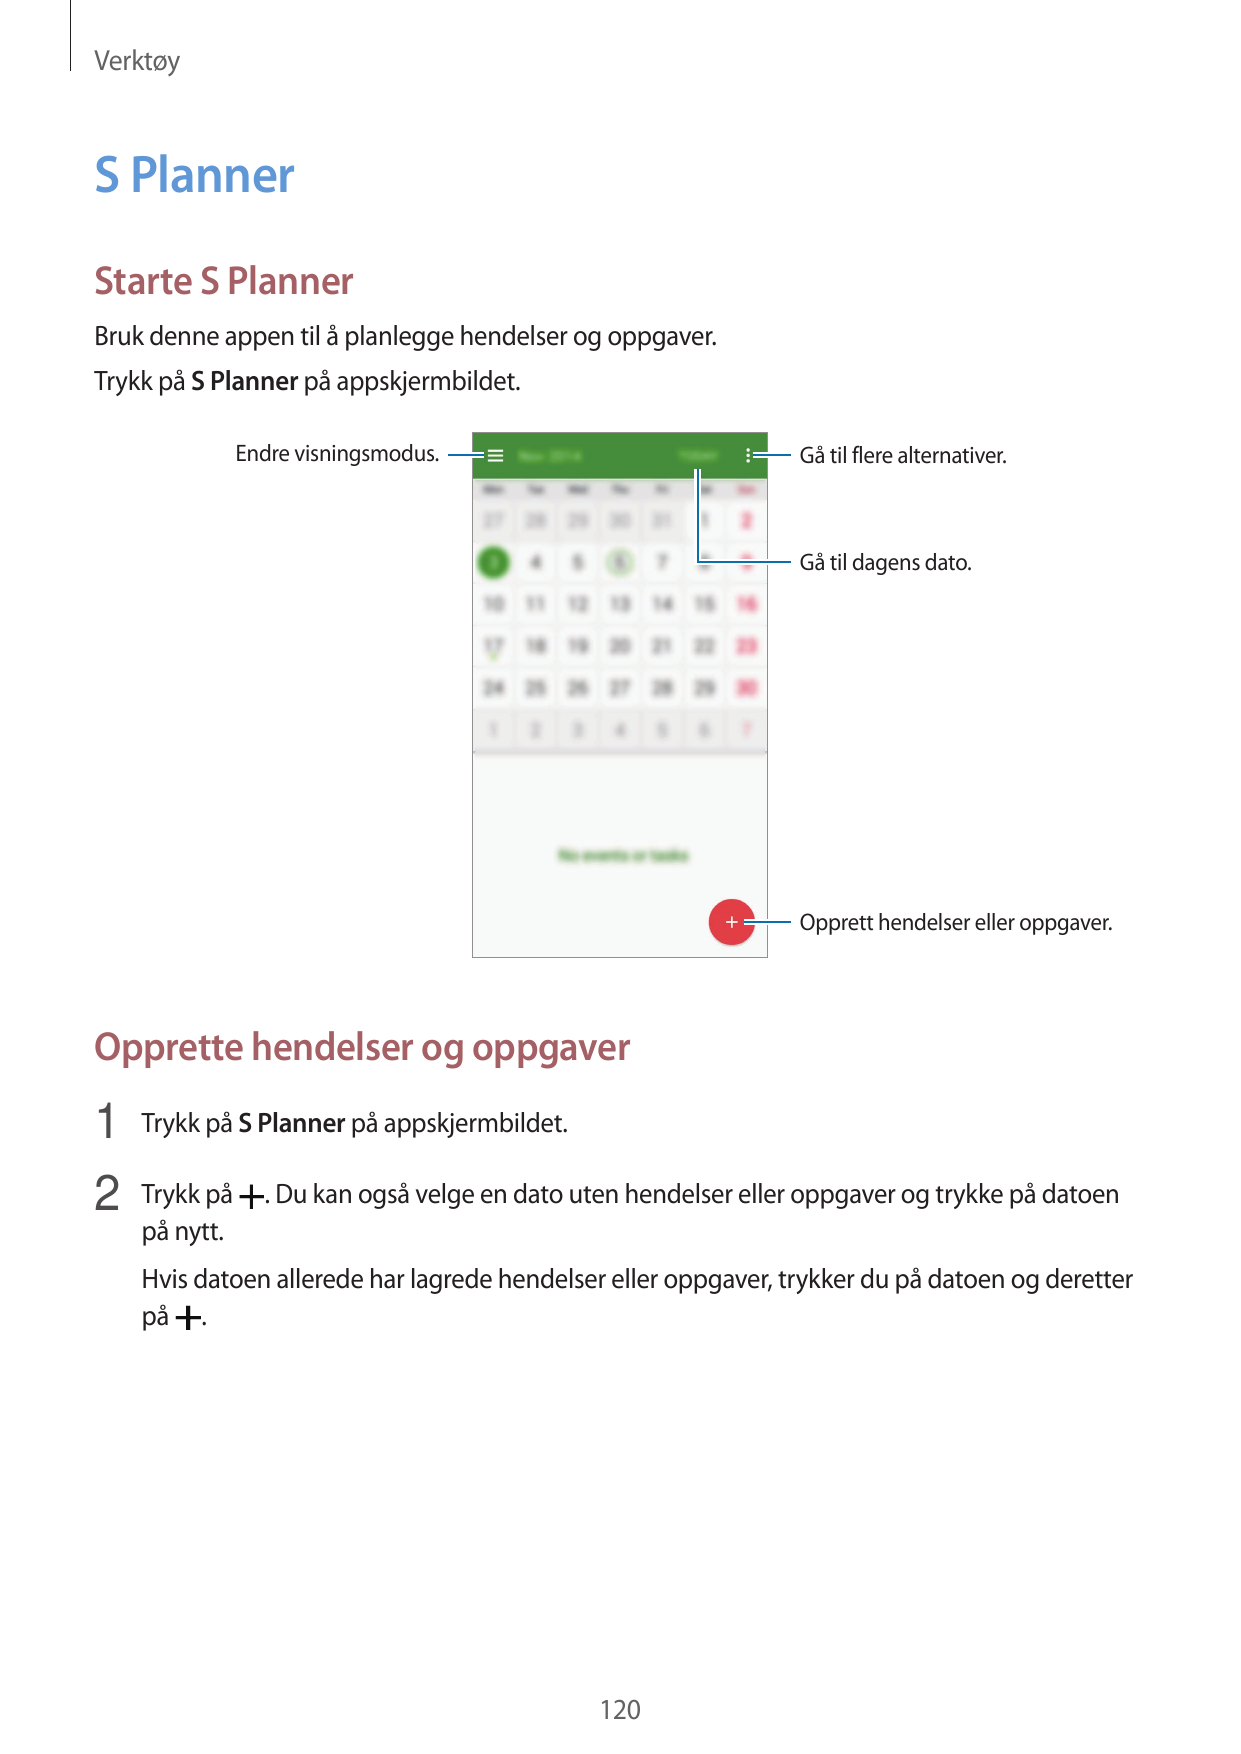 VerktøyS PlannerStarte S PlannerBruk denne appen til å planlegge hendelser og oppgaver.Trykk på S Planner på appskjermbildet.End